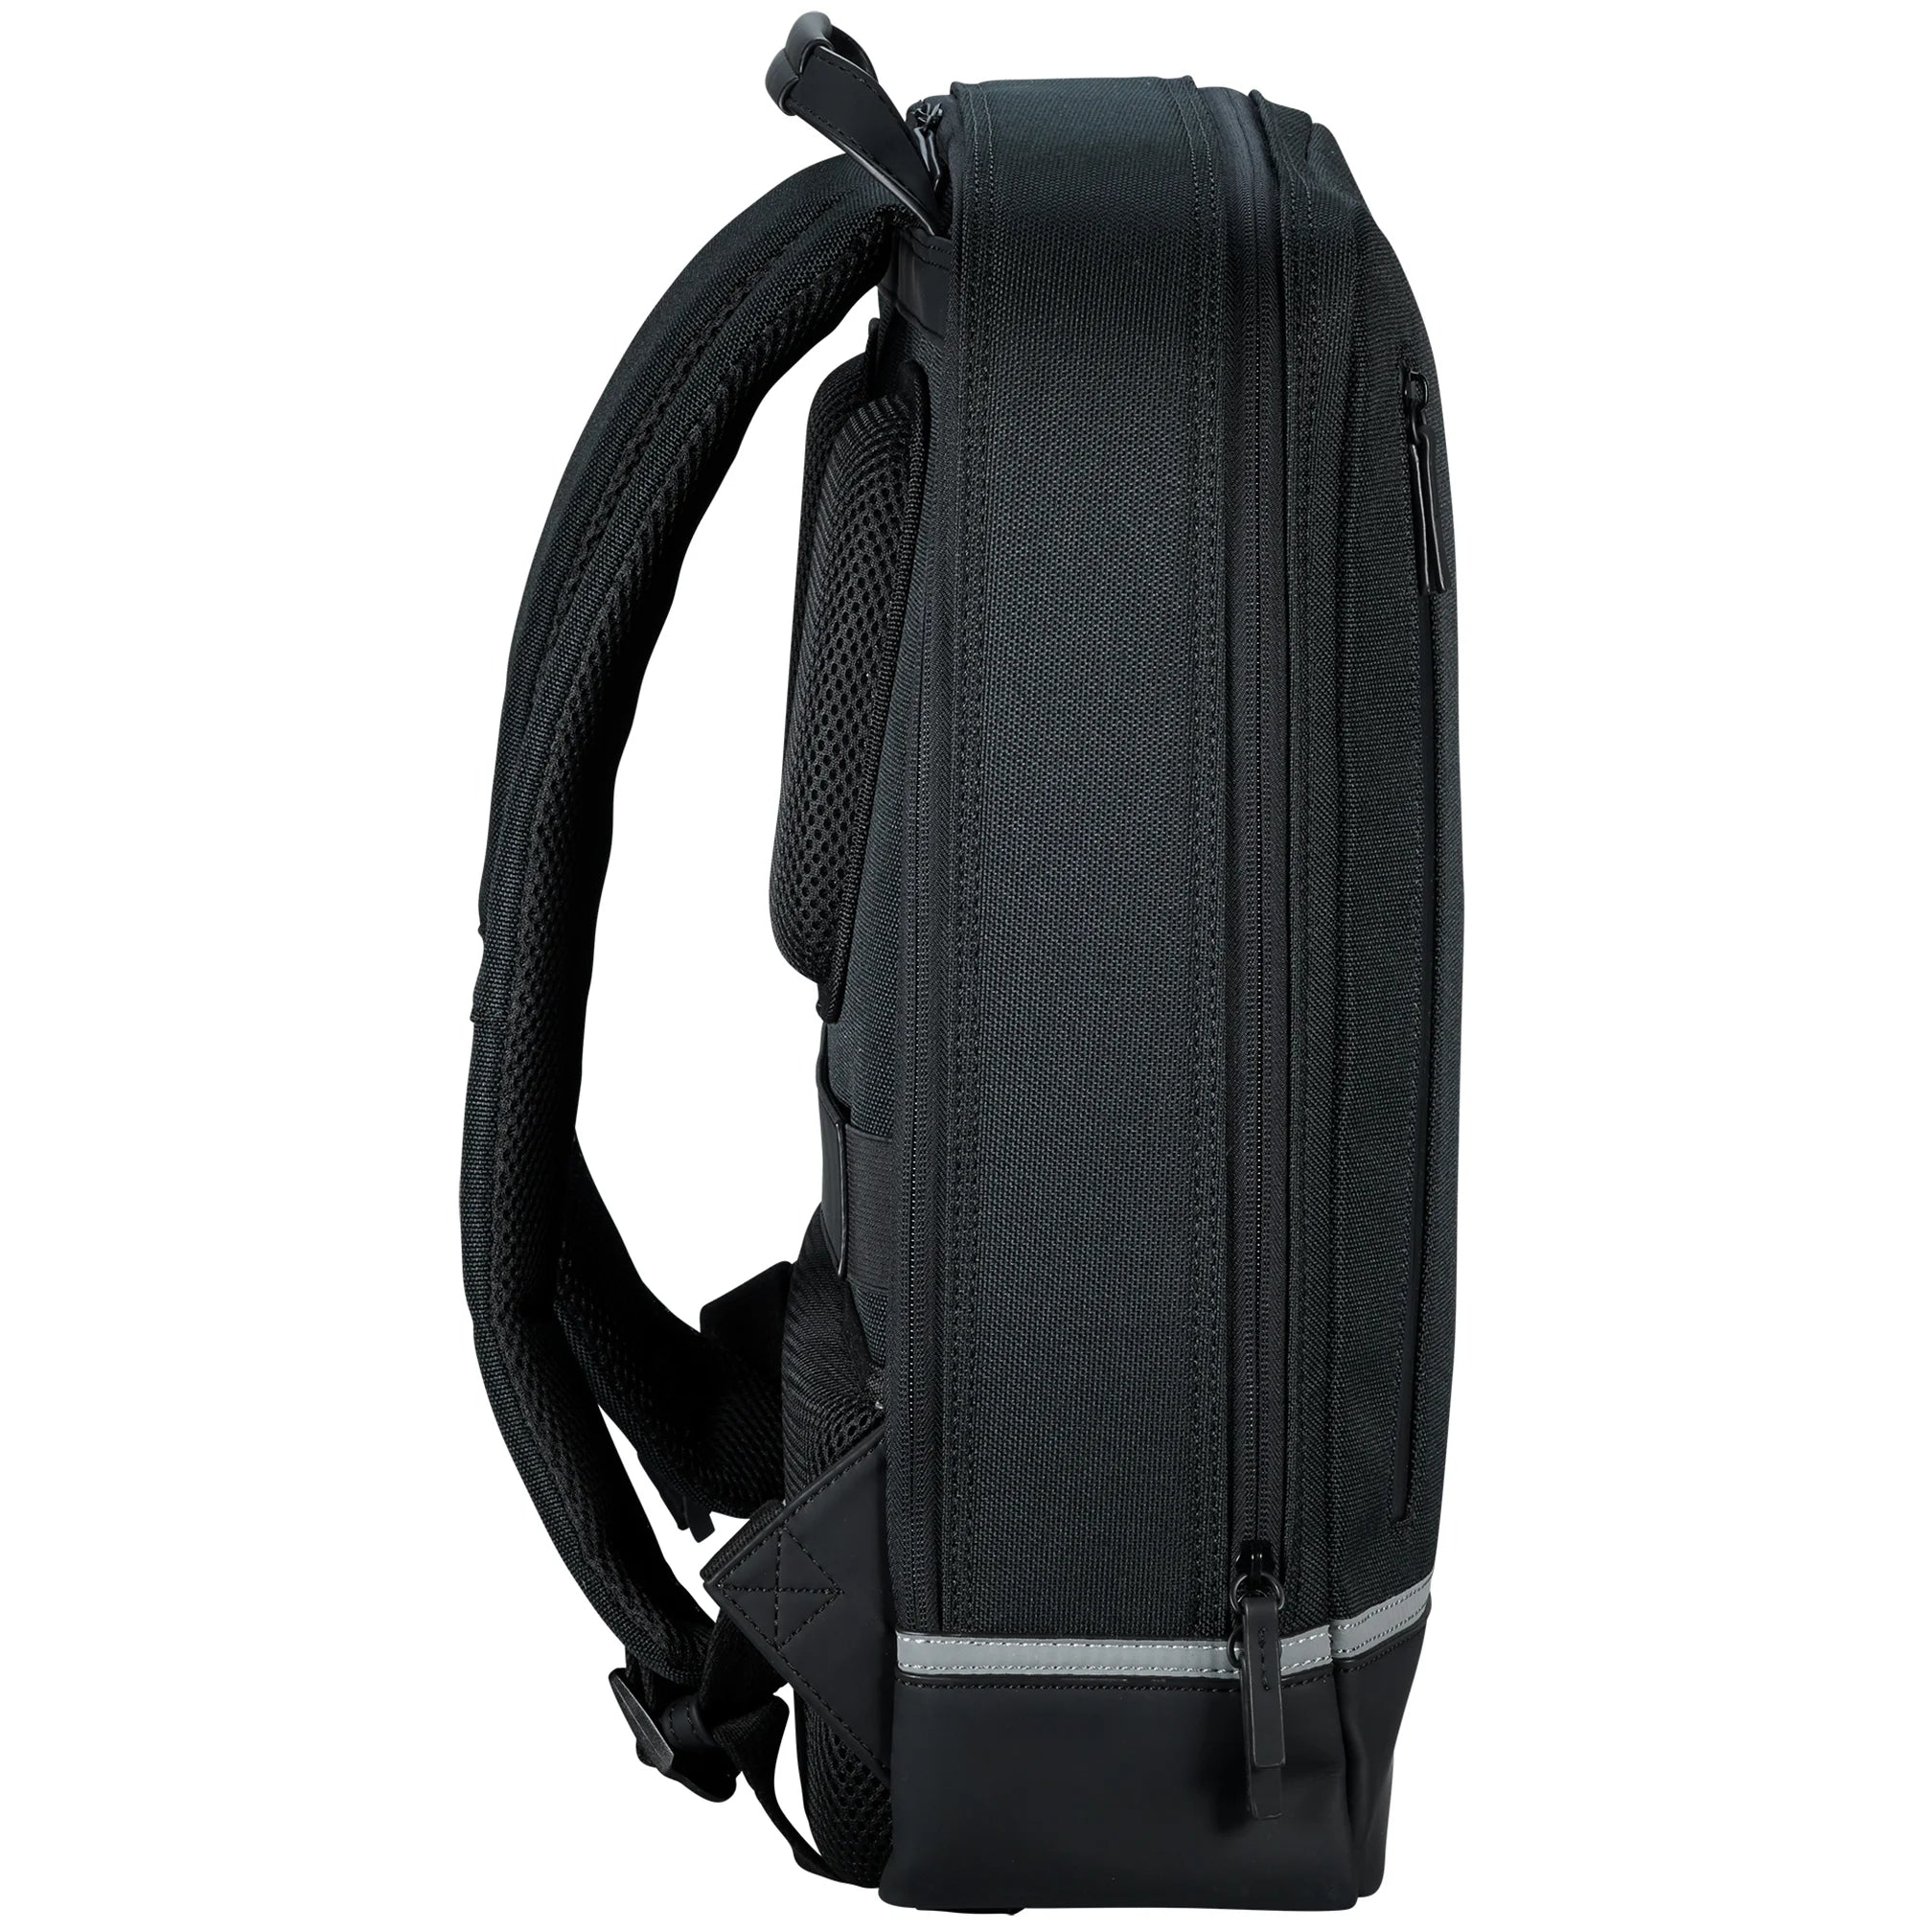 Jost Backpackspecial Daypack Sac à dos 44 cm - Noir